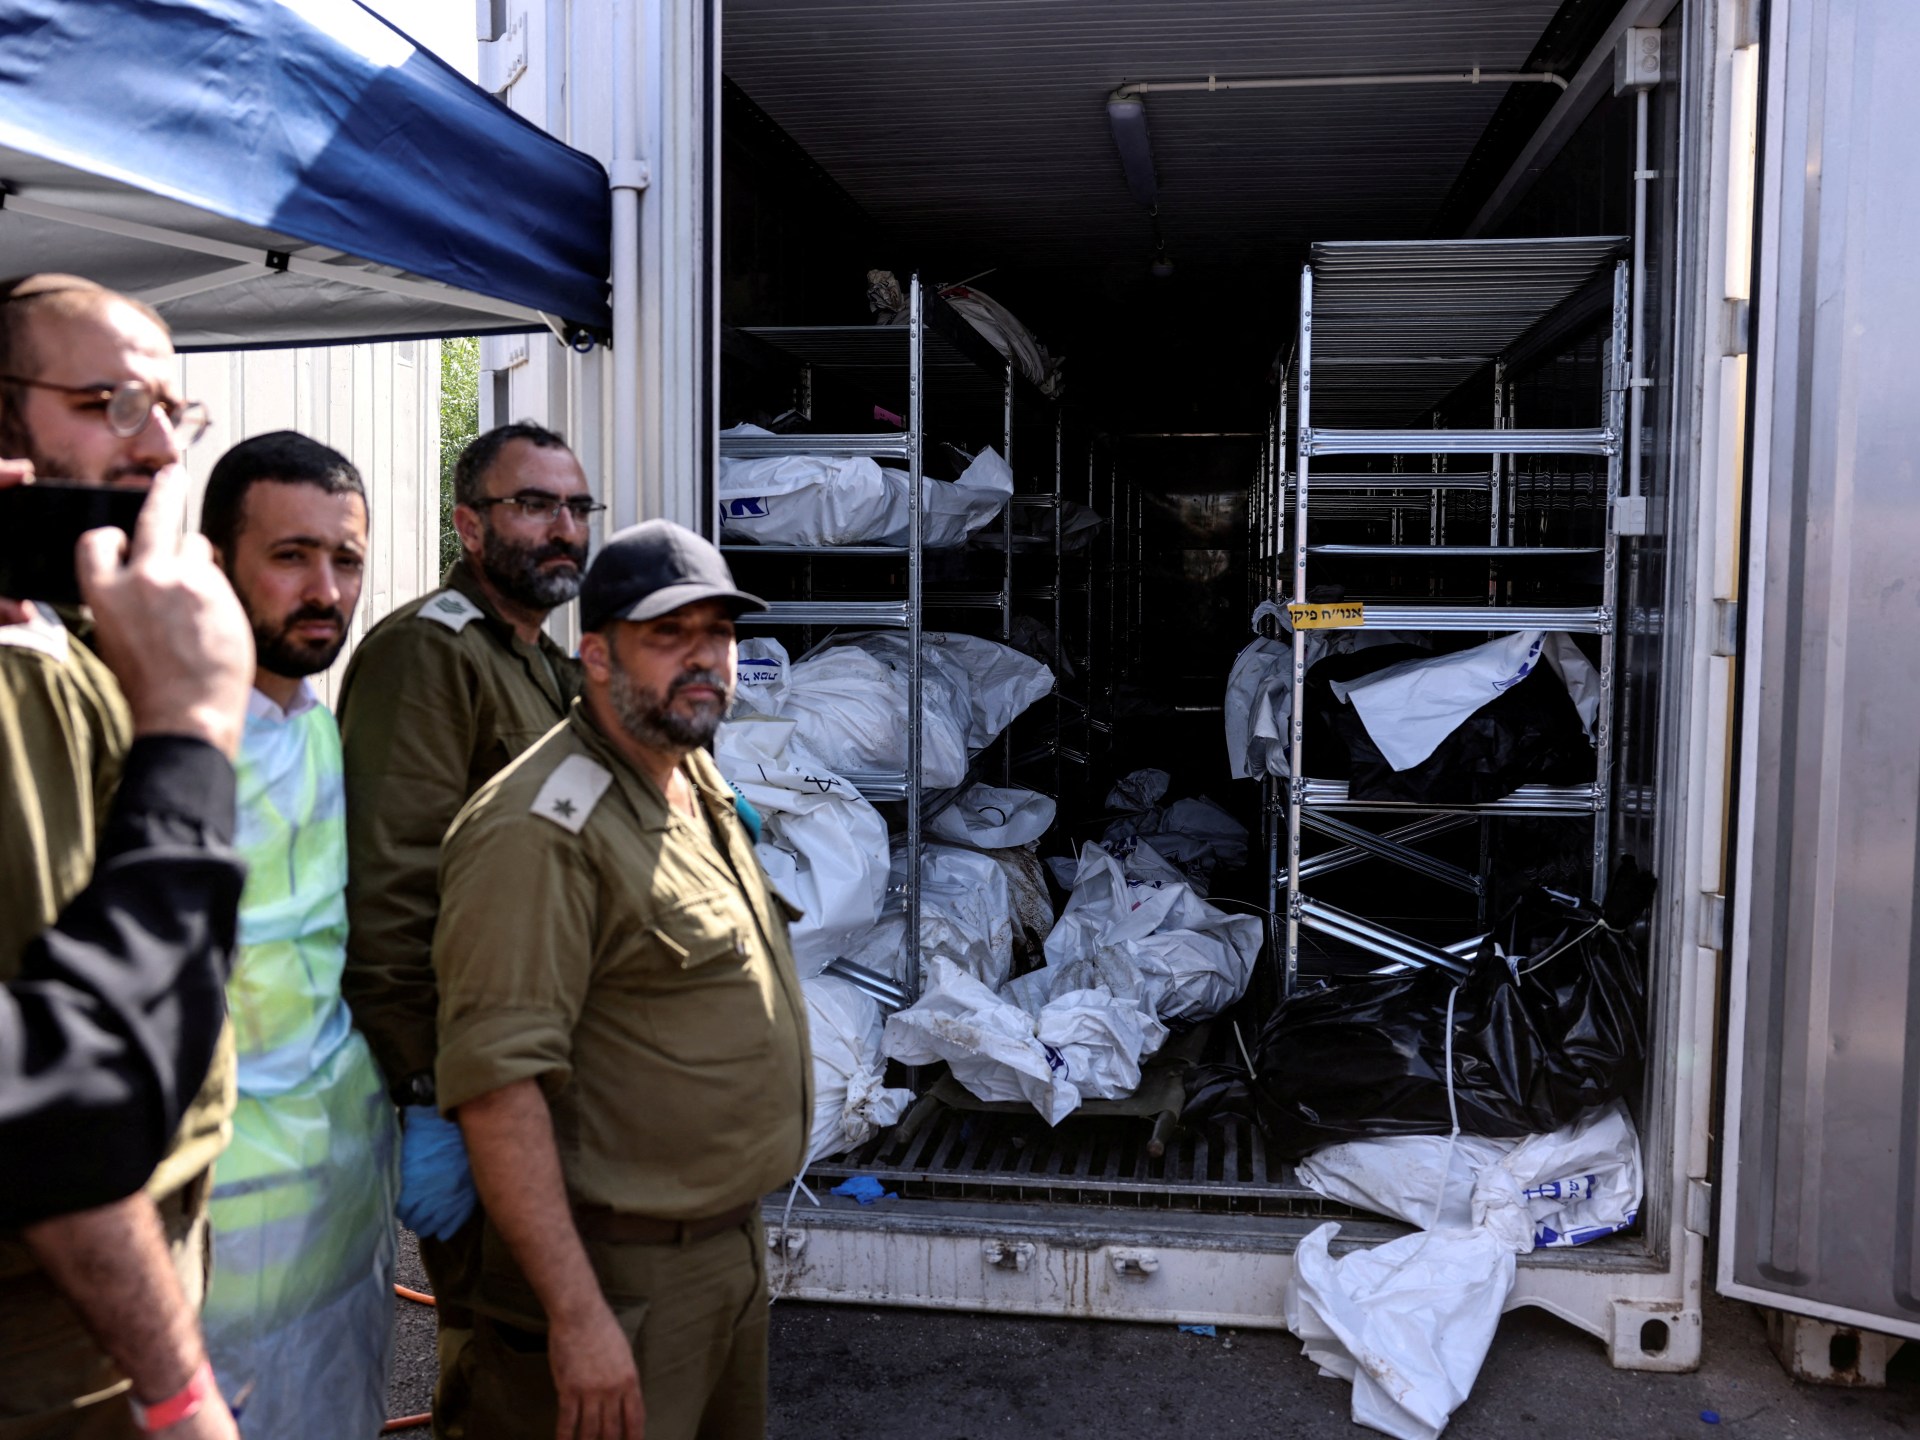 إسرائيل تعلن ارتفاع أعداد القتلى والجرحى والأسرى خلال عملية طوفان الأقصى | أخبار – البوكس نيوز